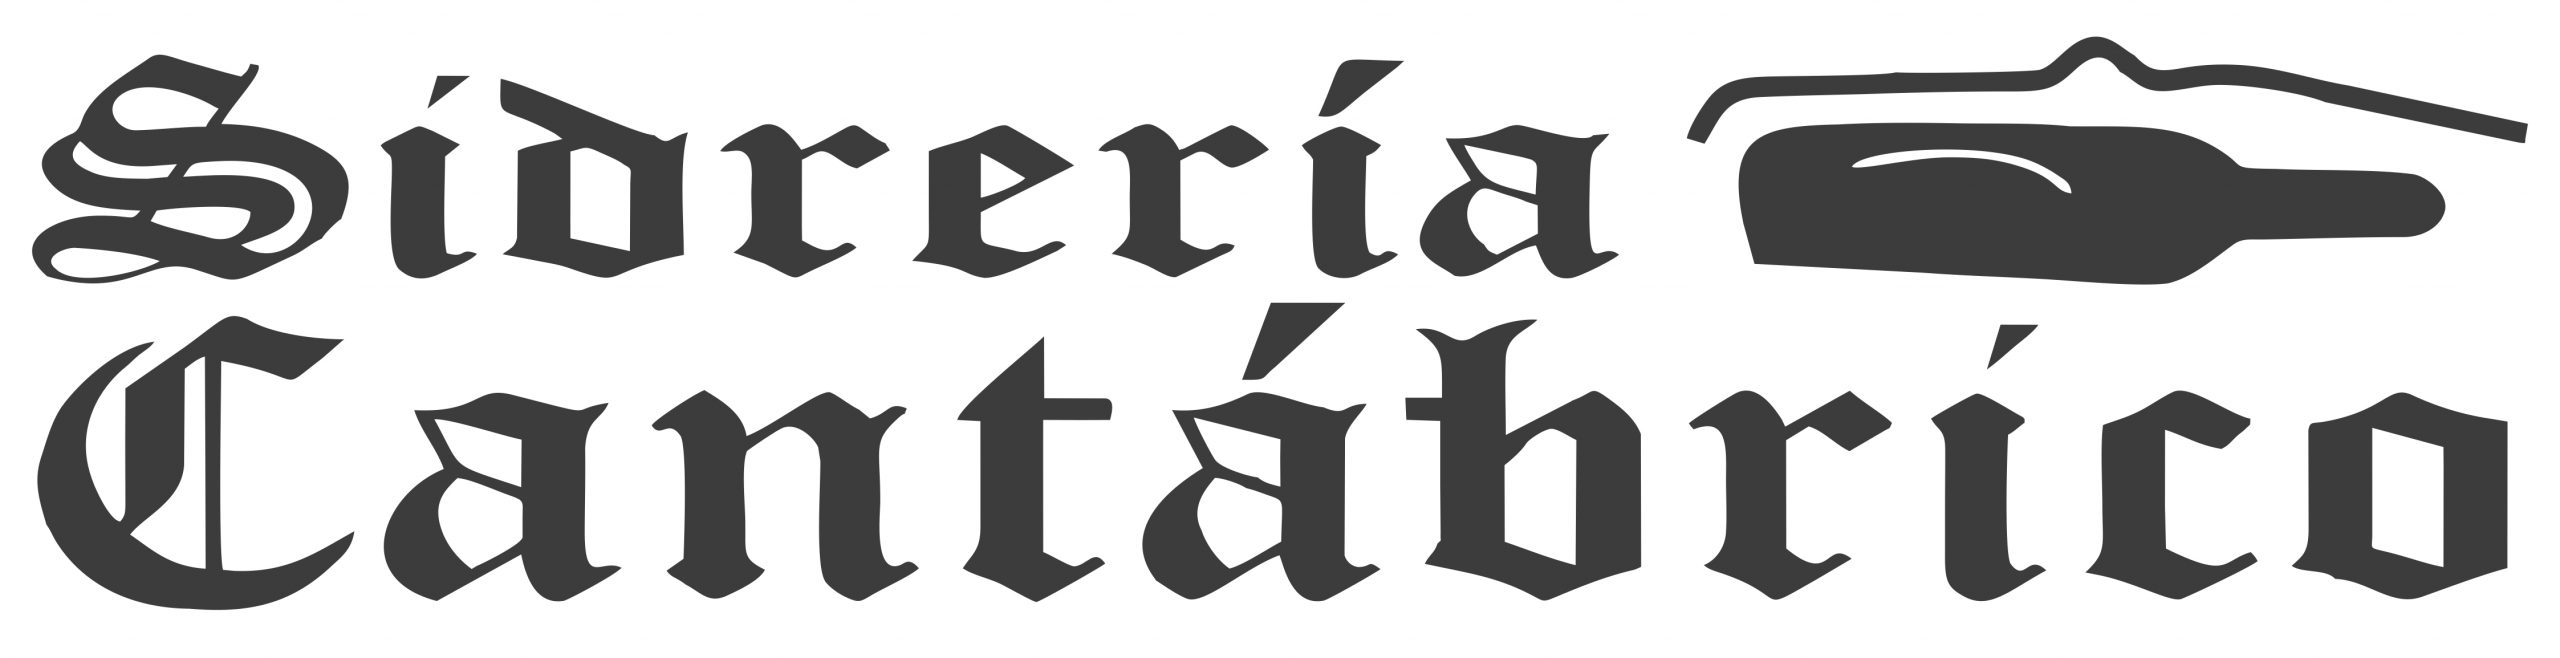 Sidreria-cantabrico-logo